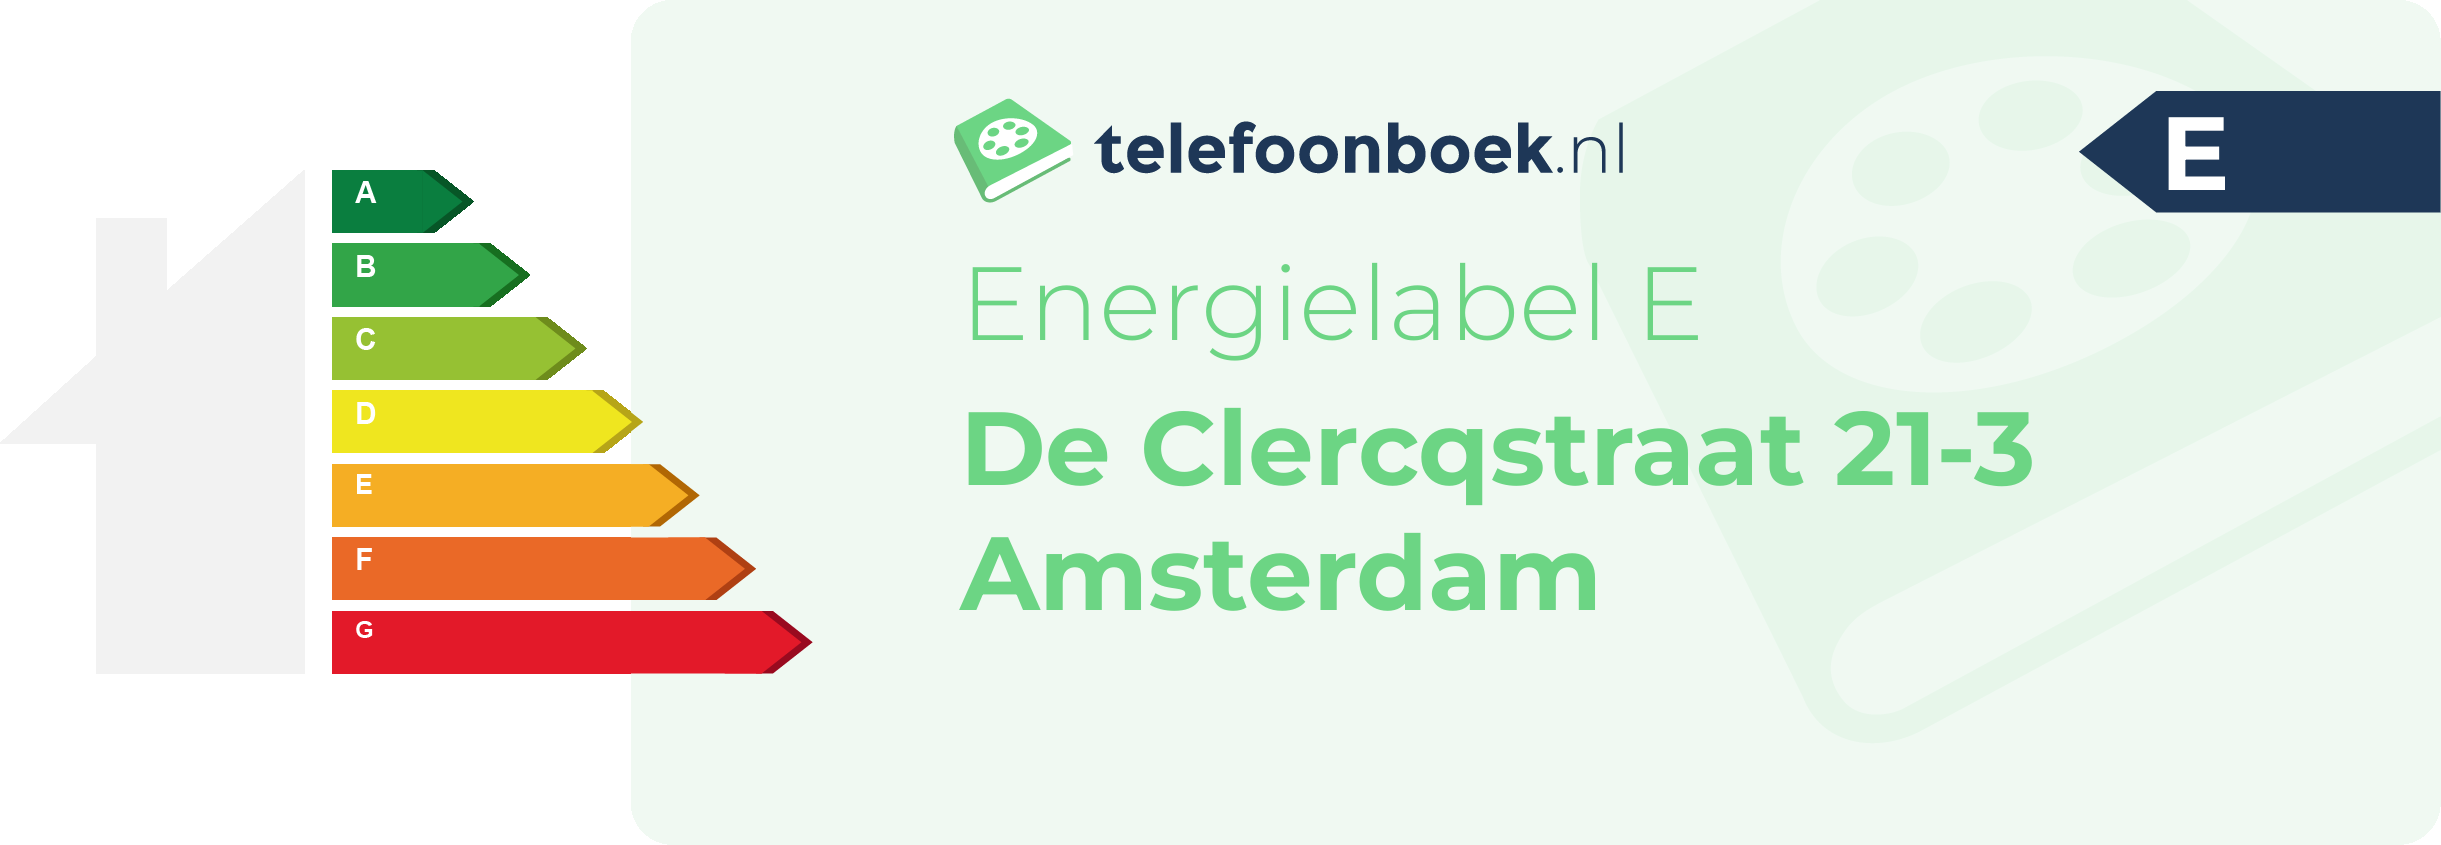 Energielabel De Clercqstraat 21-3 Amsterdam